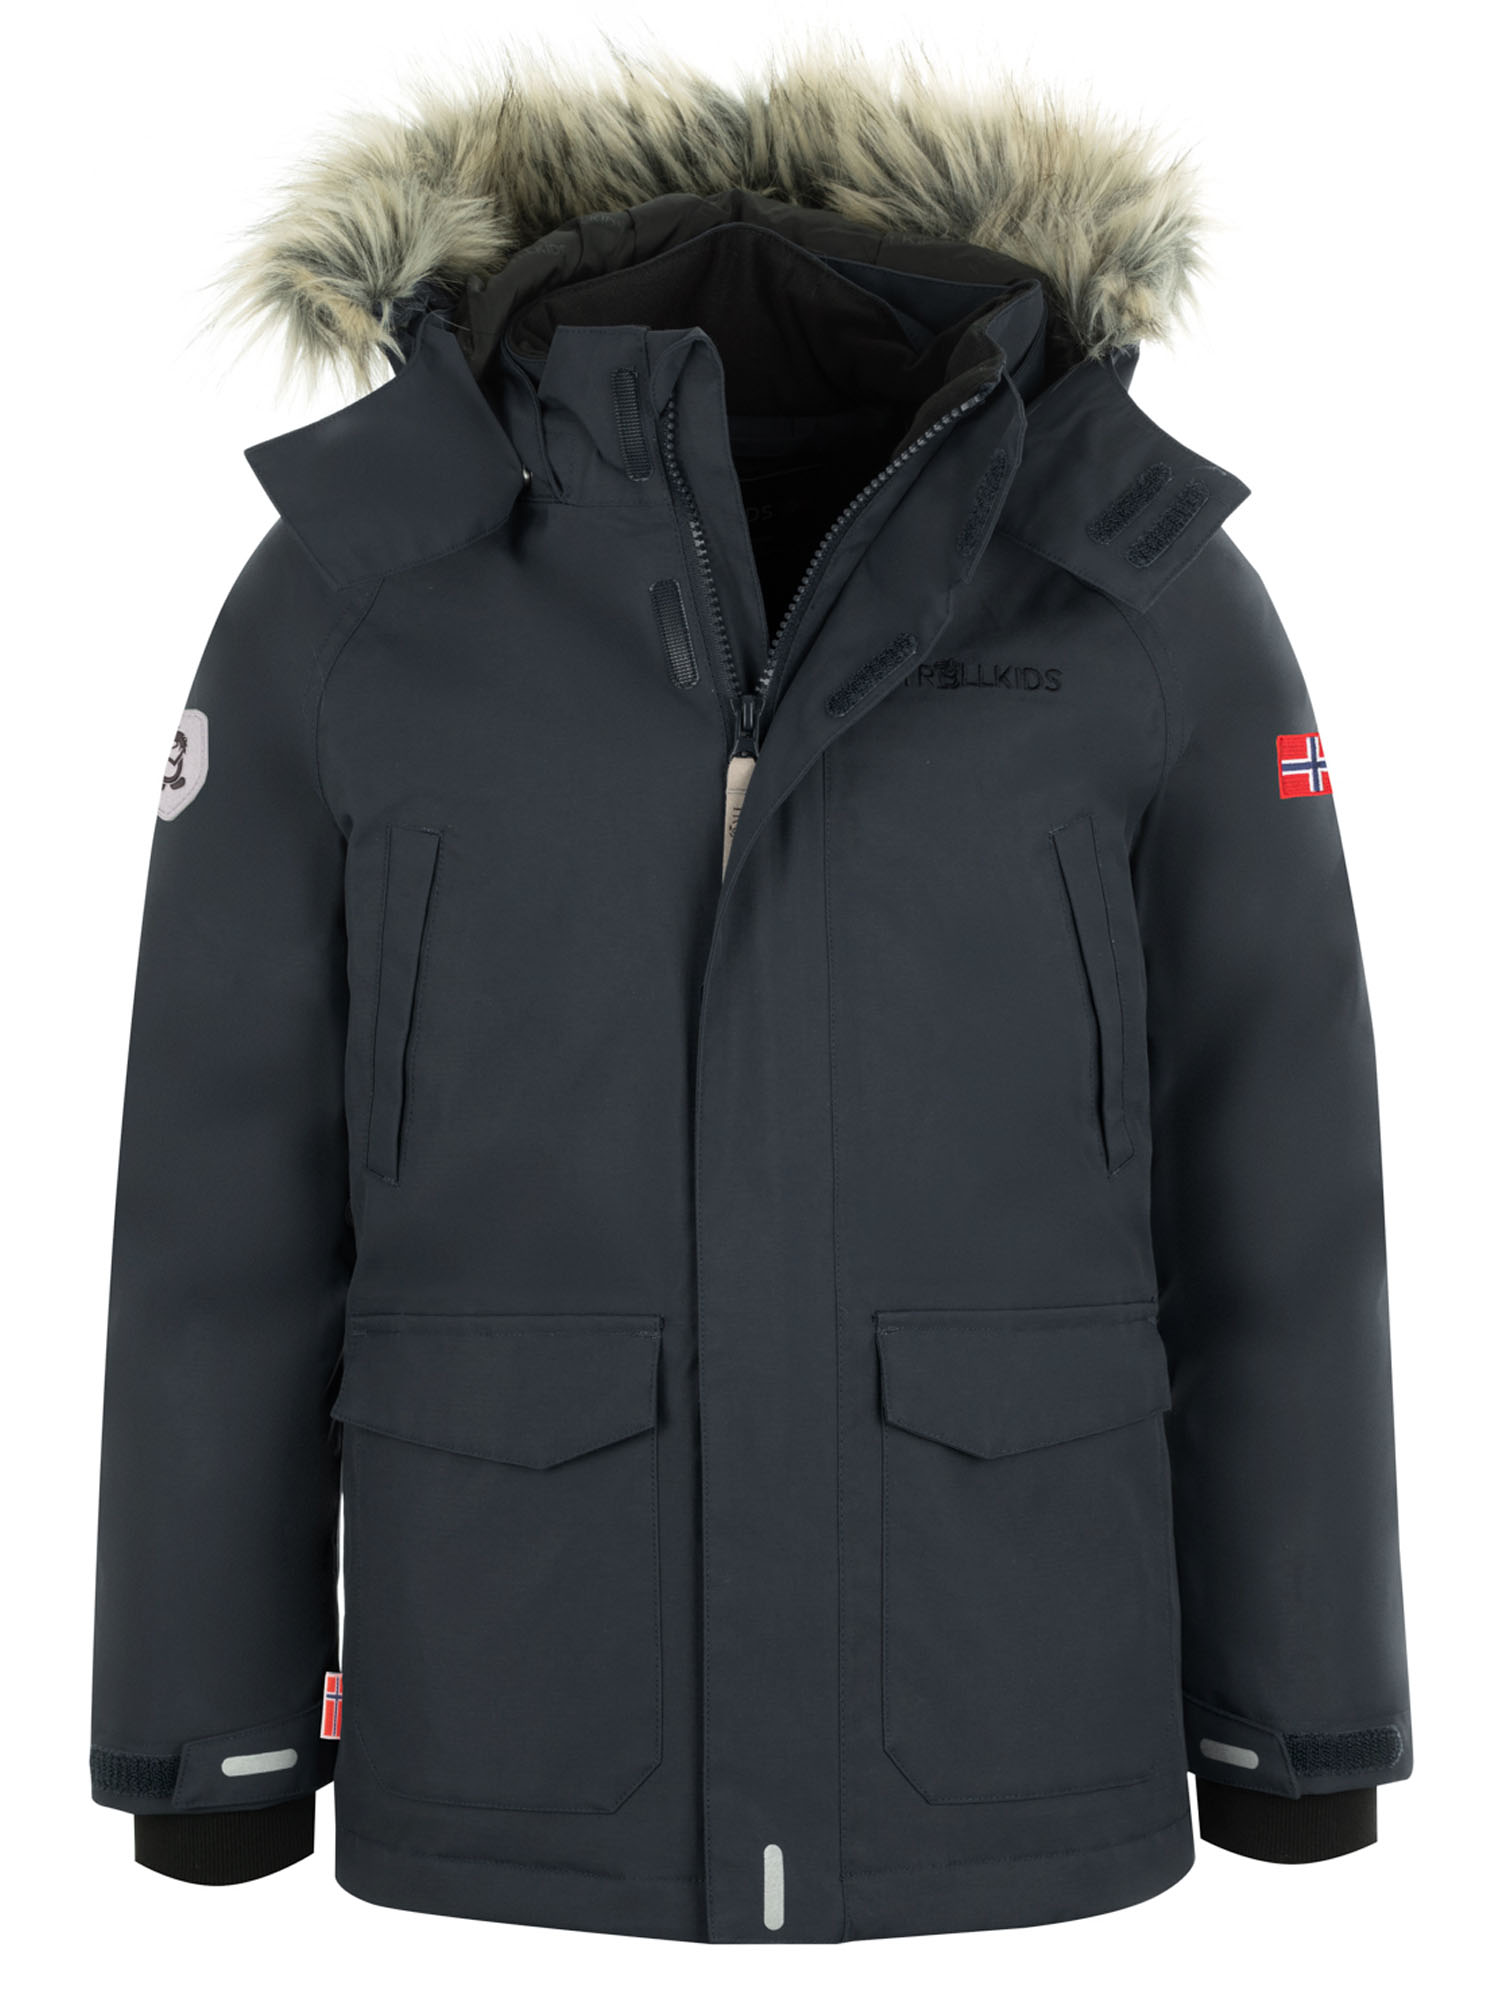 Куртка Детская Trollkids Spitsbergen Anthracite (Рост:116) куртка allsport vancouver 2219 anthracite